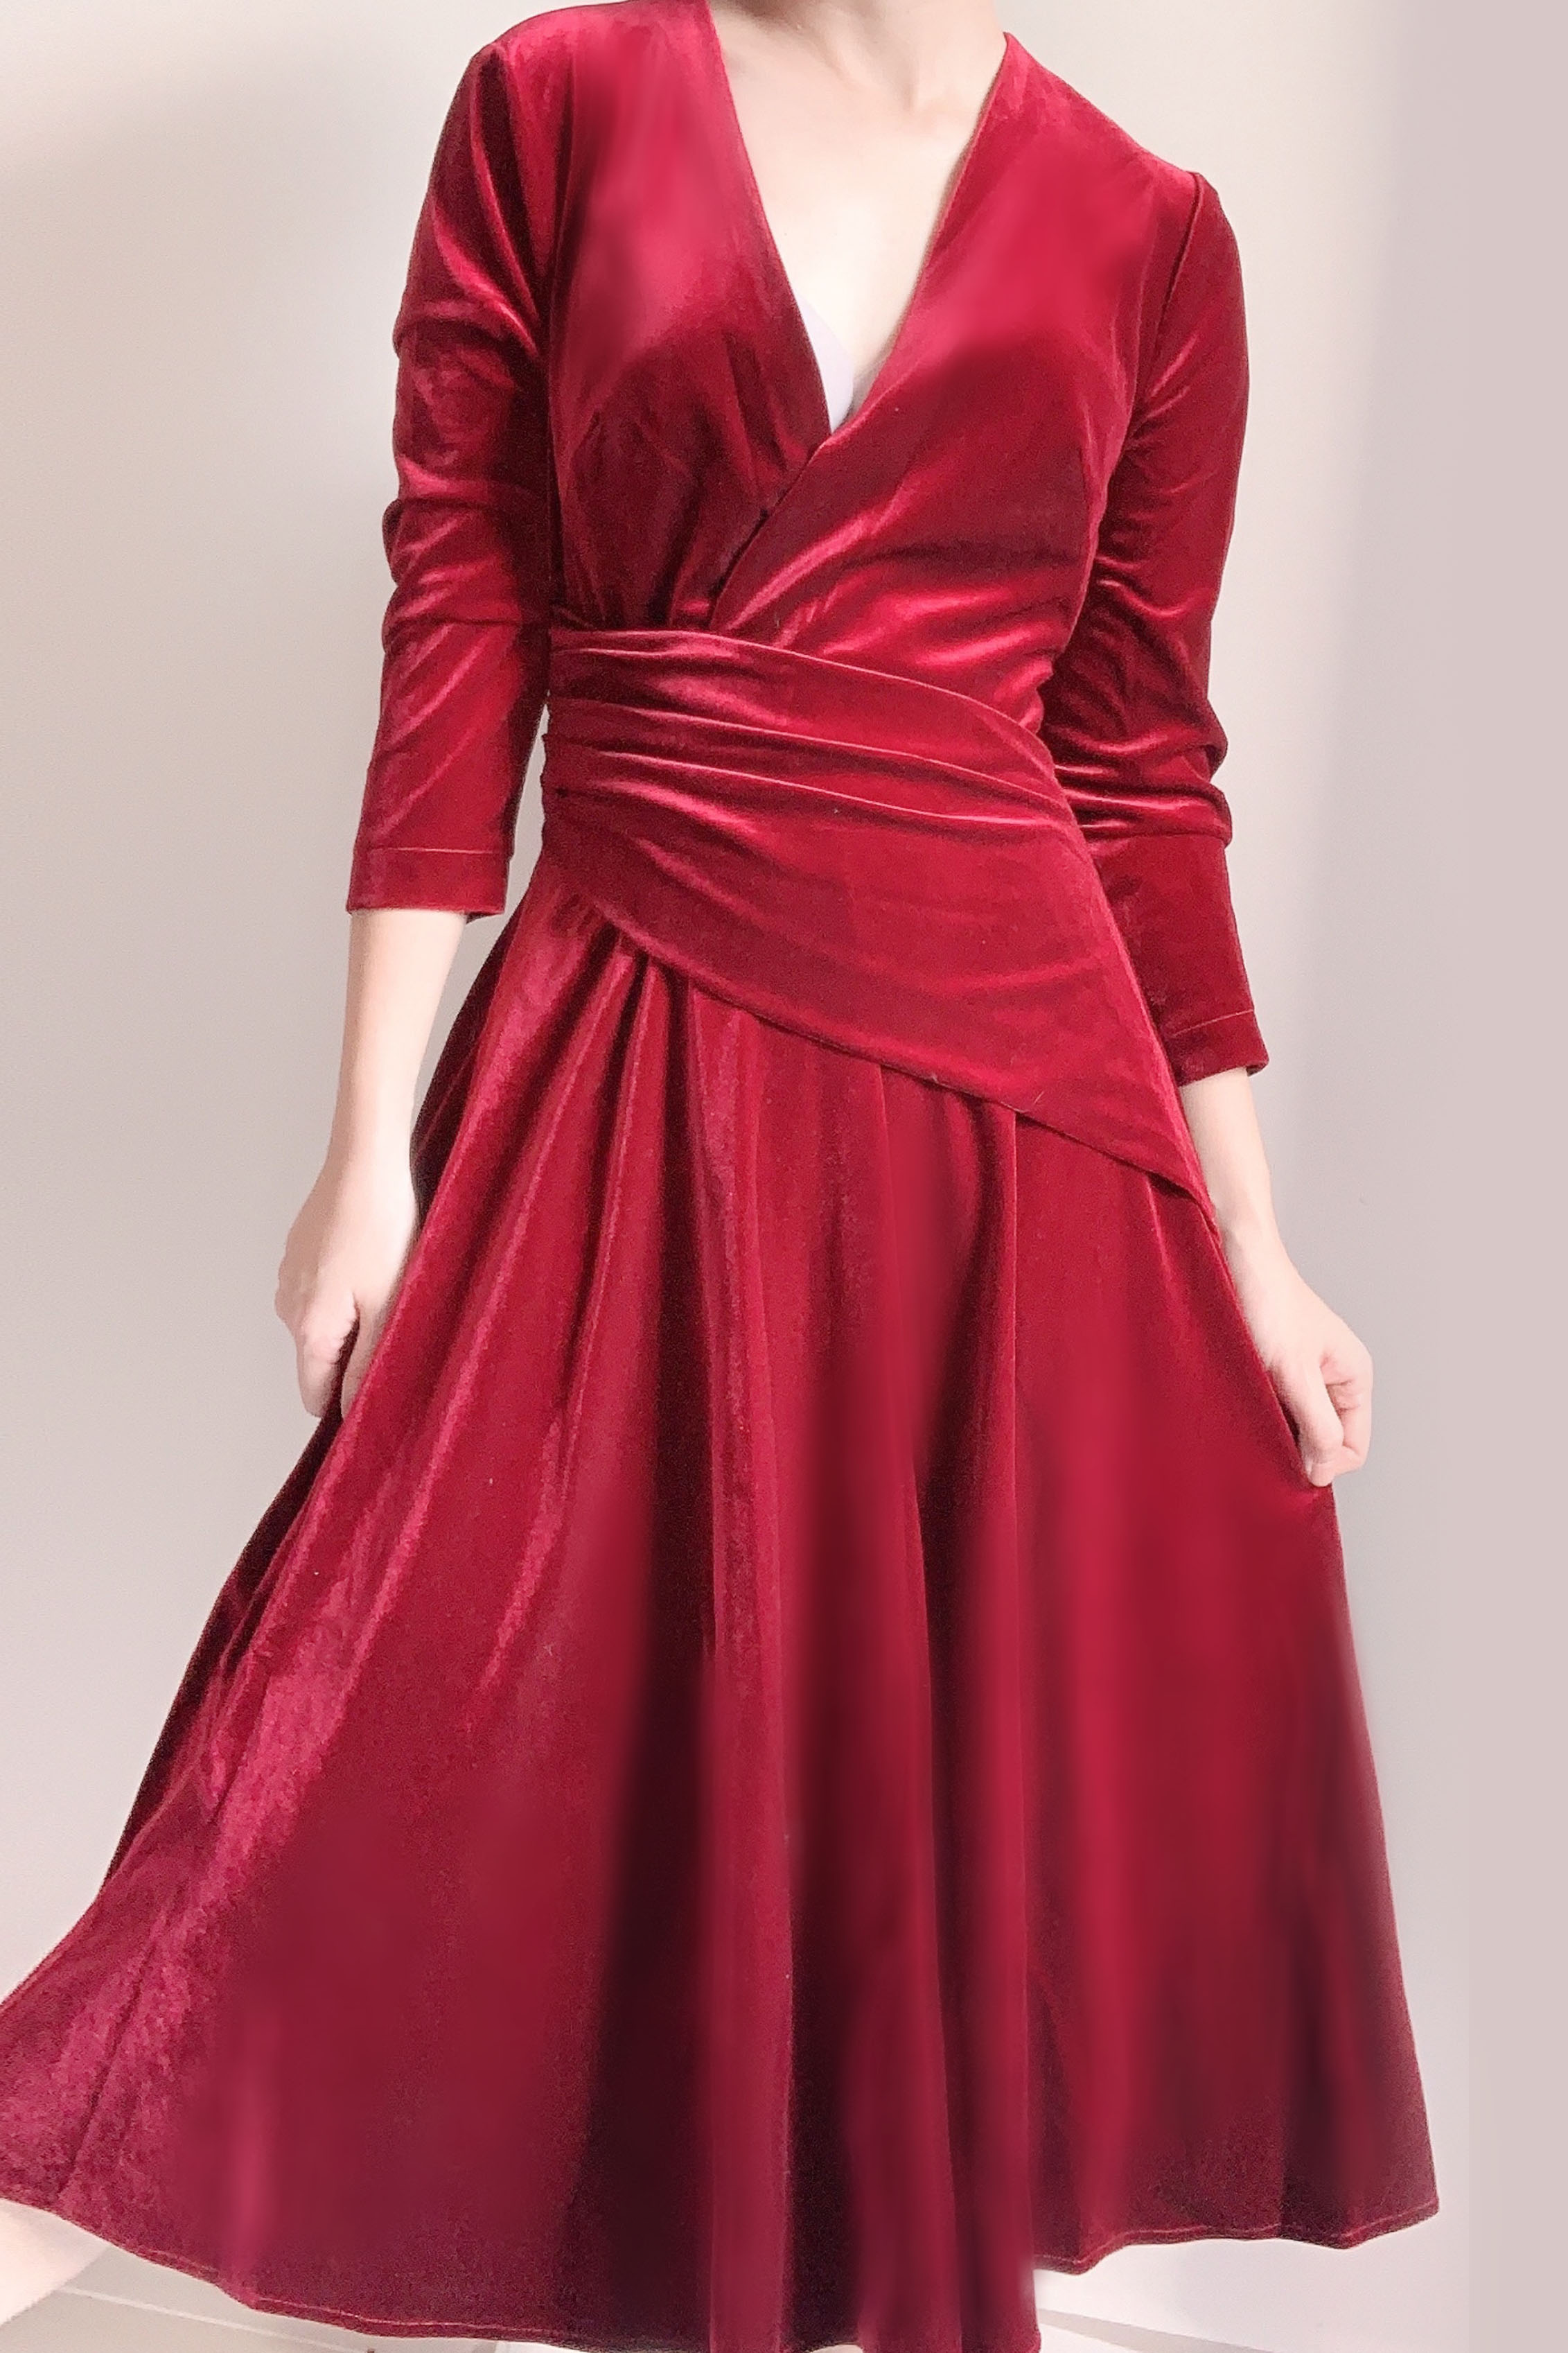 Váy Nhung Đỏ Khoét Eo Viền Đá, Đầm Nhung Đỏ Đính Đá Khoét Eo Tay Phồng đẹp  dễ thương dáng xòe có lớp lót Quảng châu - Tìm Voucher